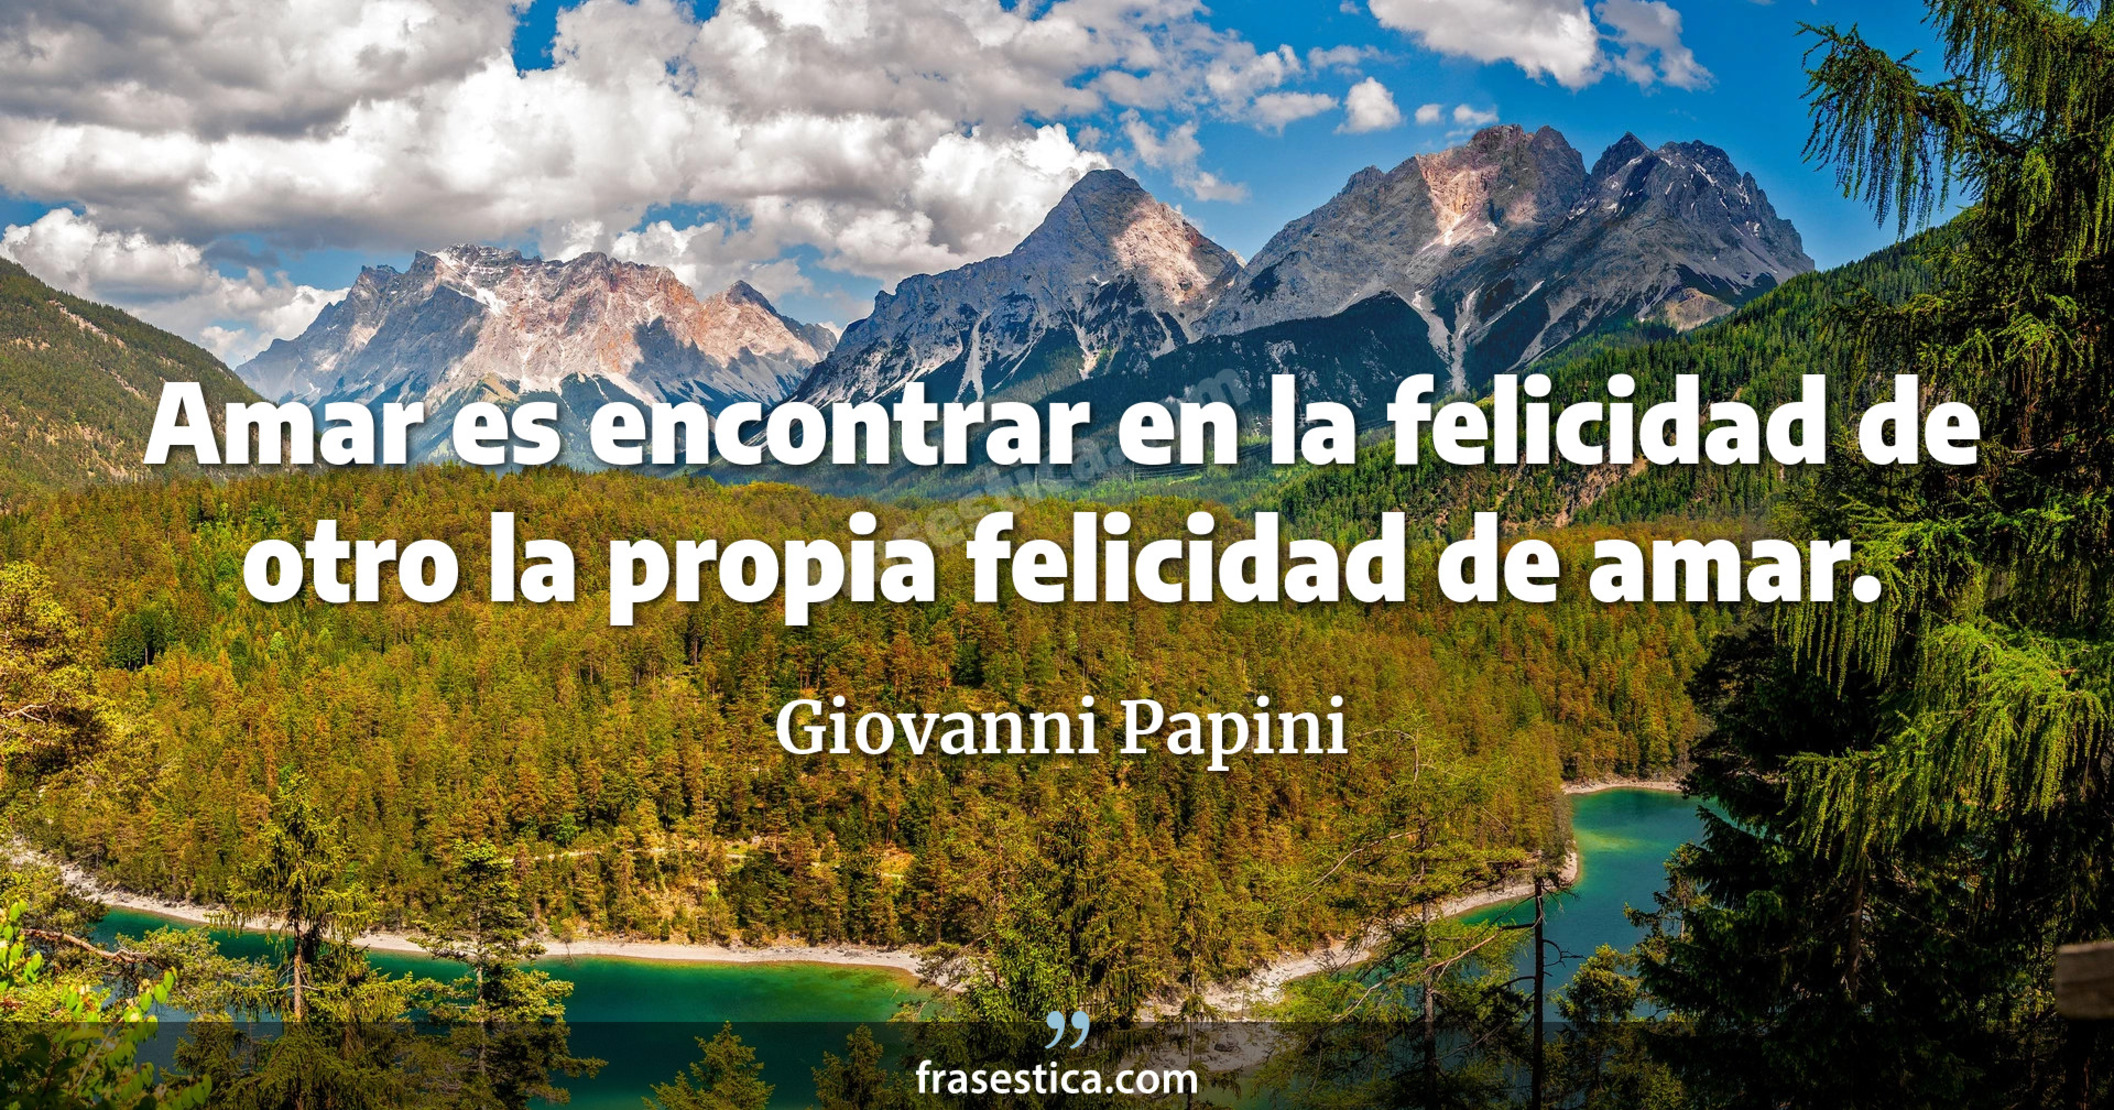 Amar es encontrar en la felicidad de otro la propia felicidad de amar. - Giovanni Papini